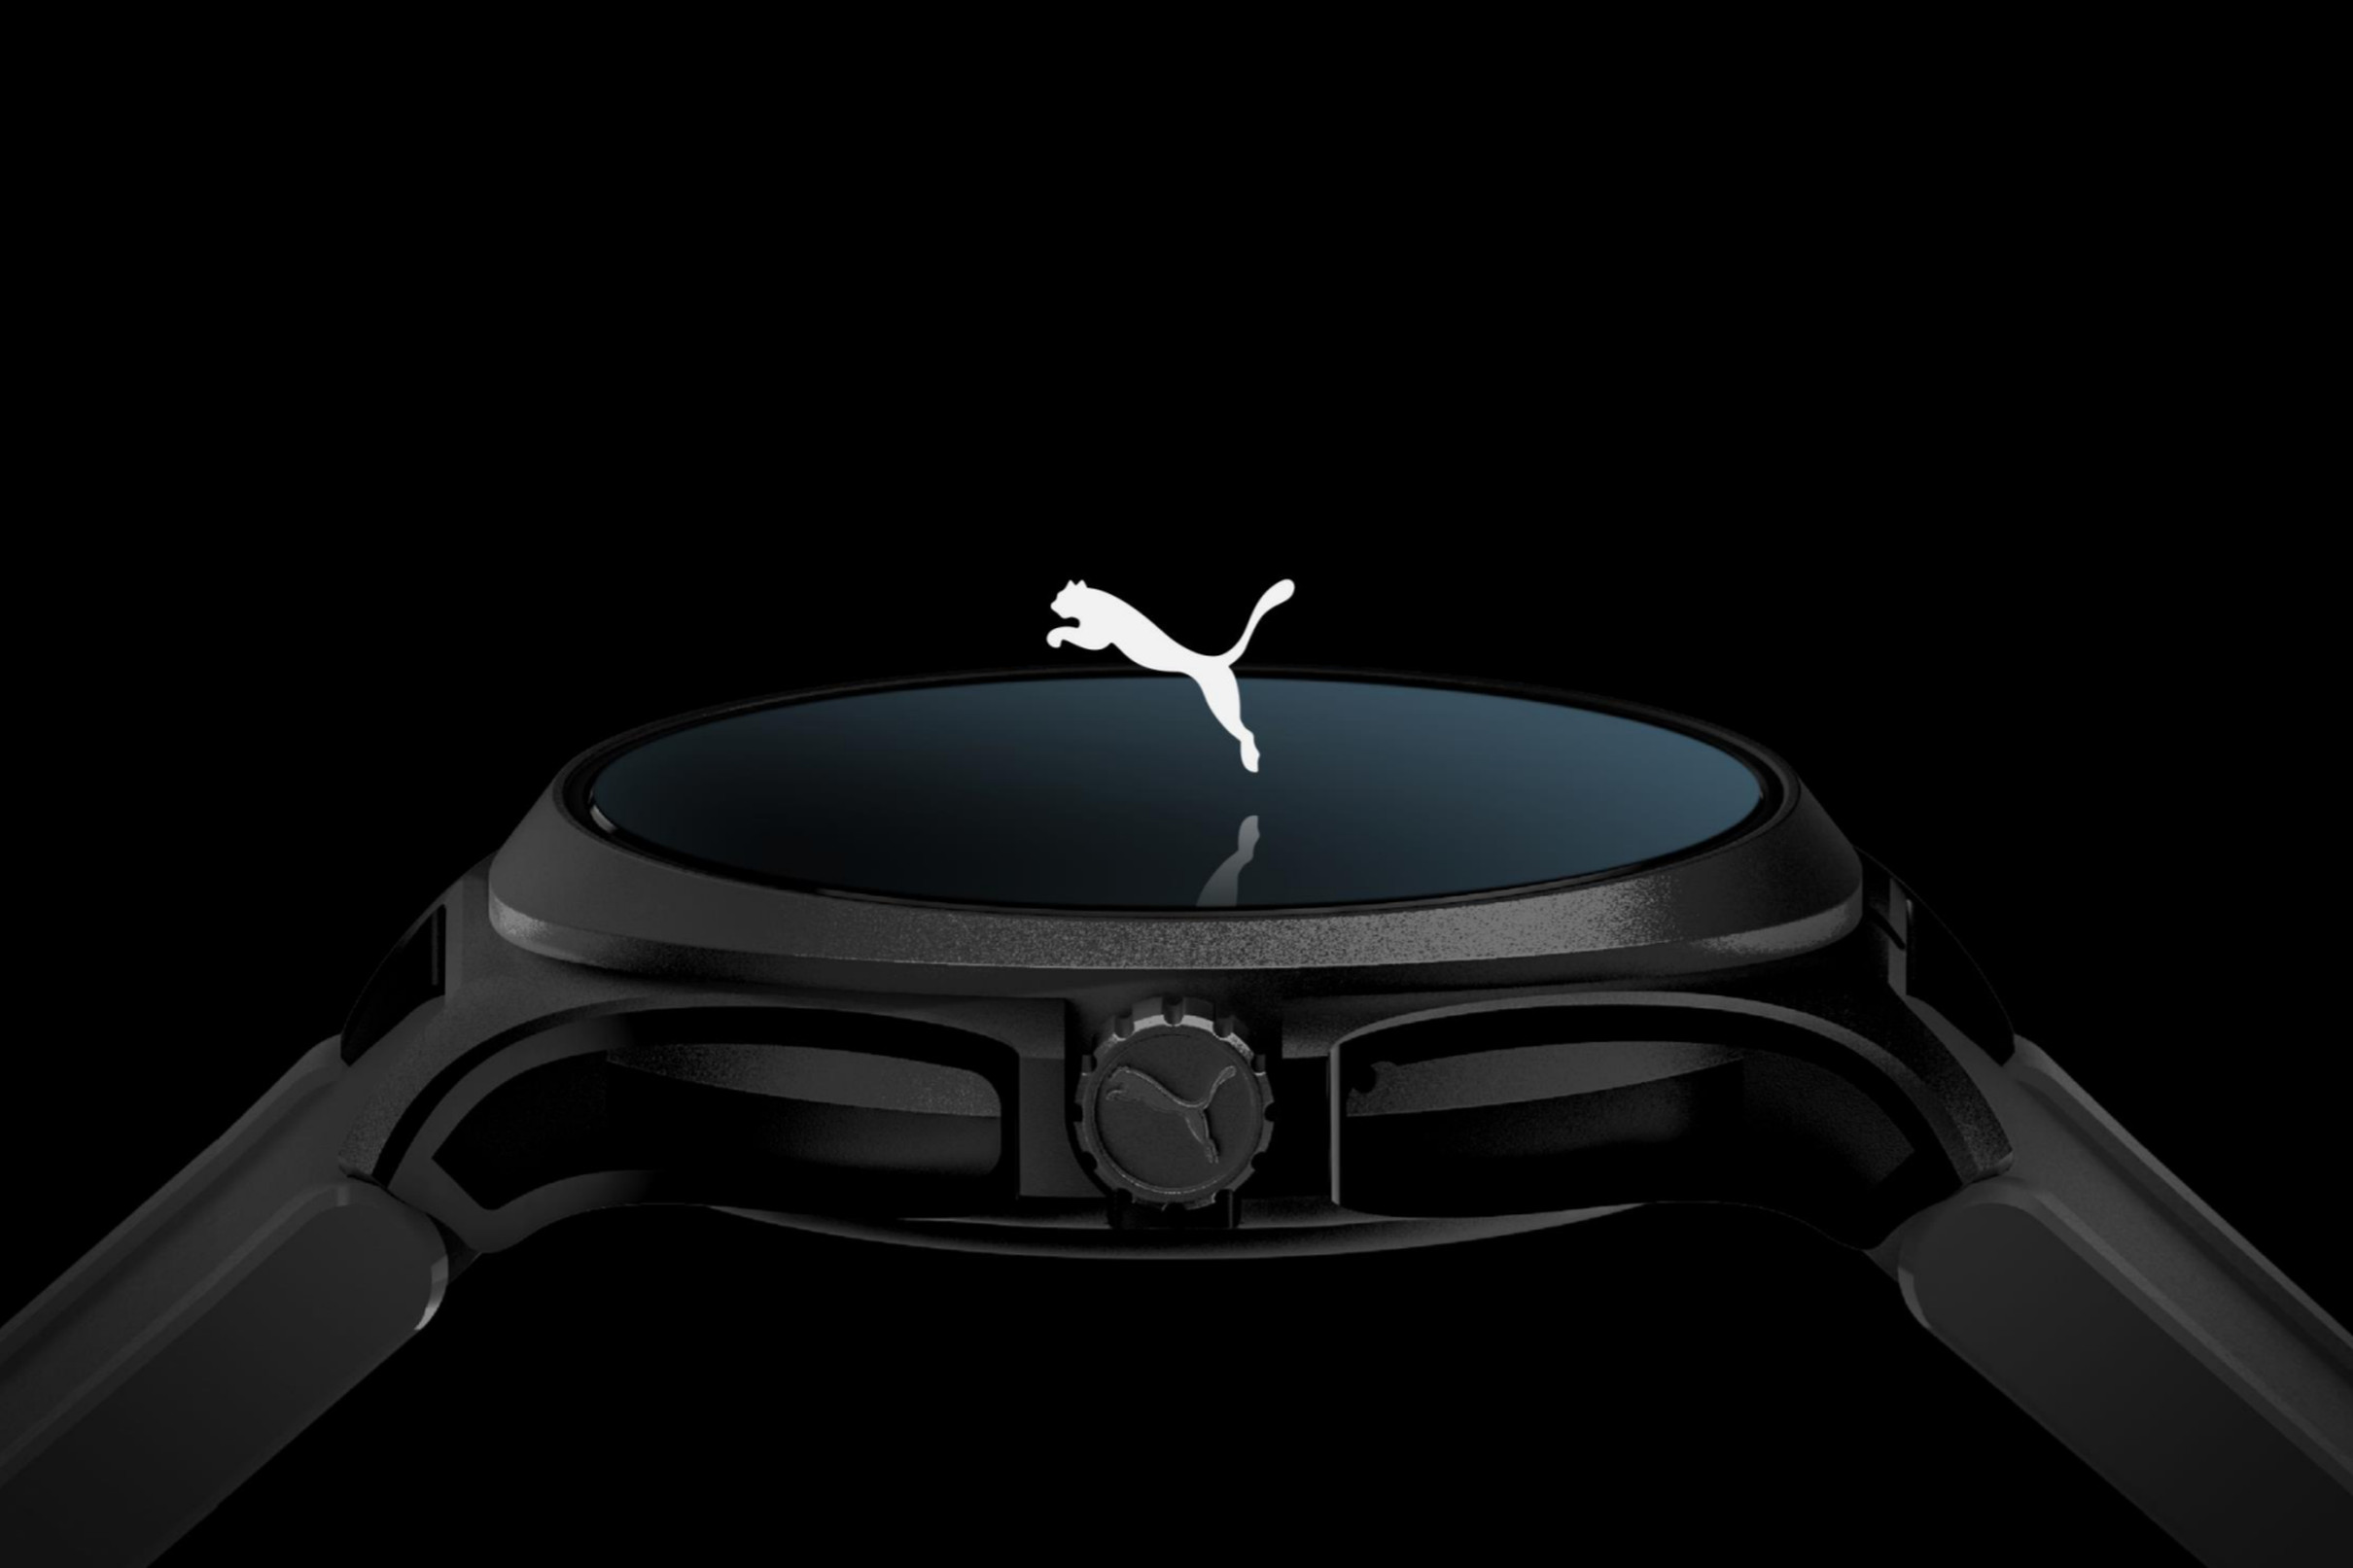 Puma giới thiệu smartwatch đầu tiên của mình chạy Wear OS và sẽ ra mắt vào tháng 11